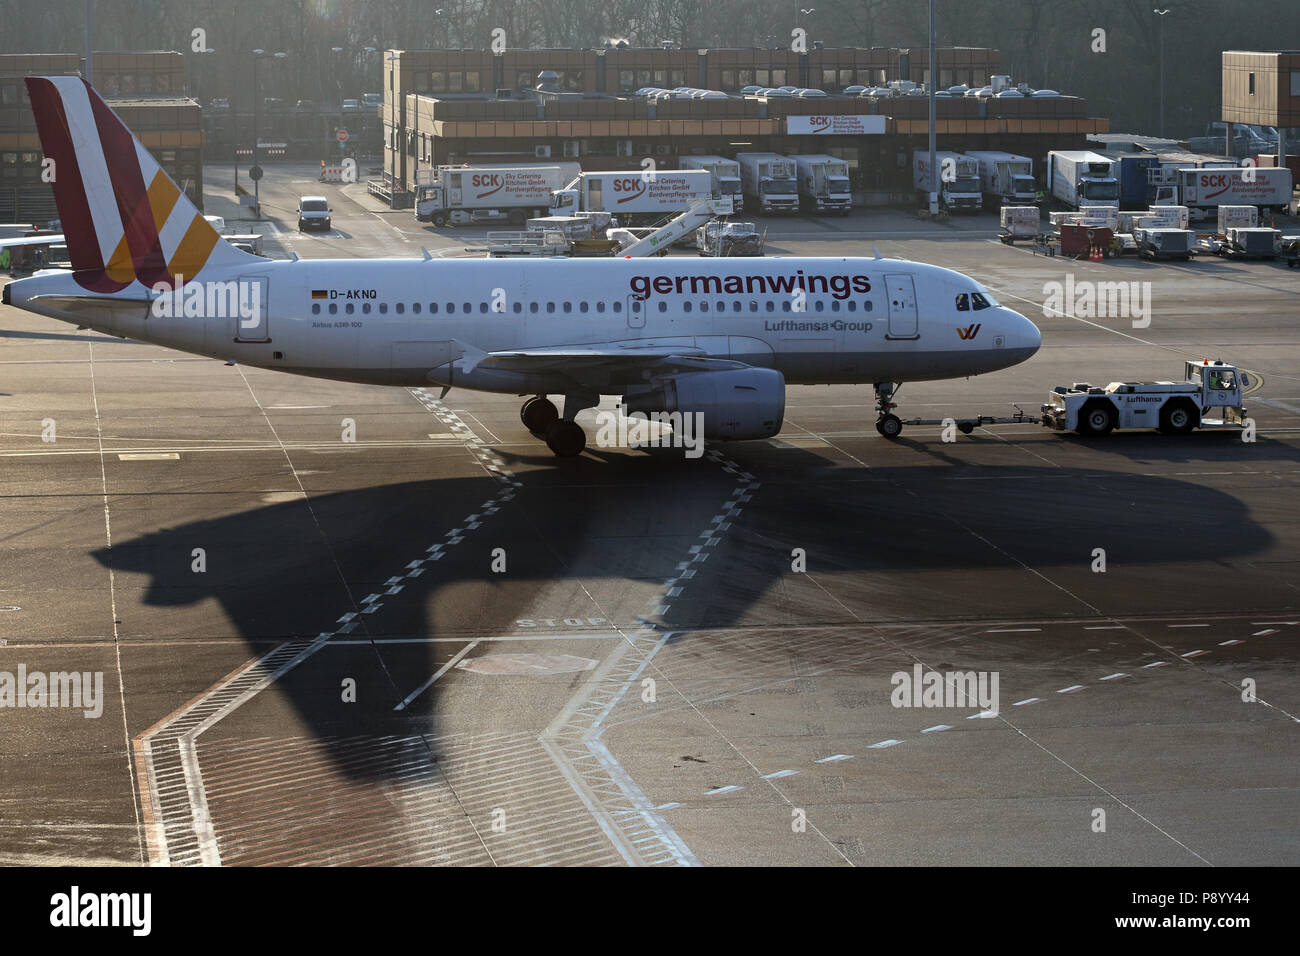 Berlin, Allemagne, Airbus A319 germanwings jette une ombre sur le tarmac de l'aéroport Berlin-Tegel Banque D'Images